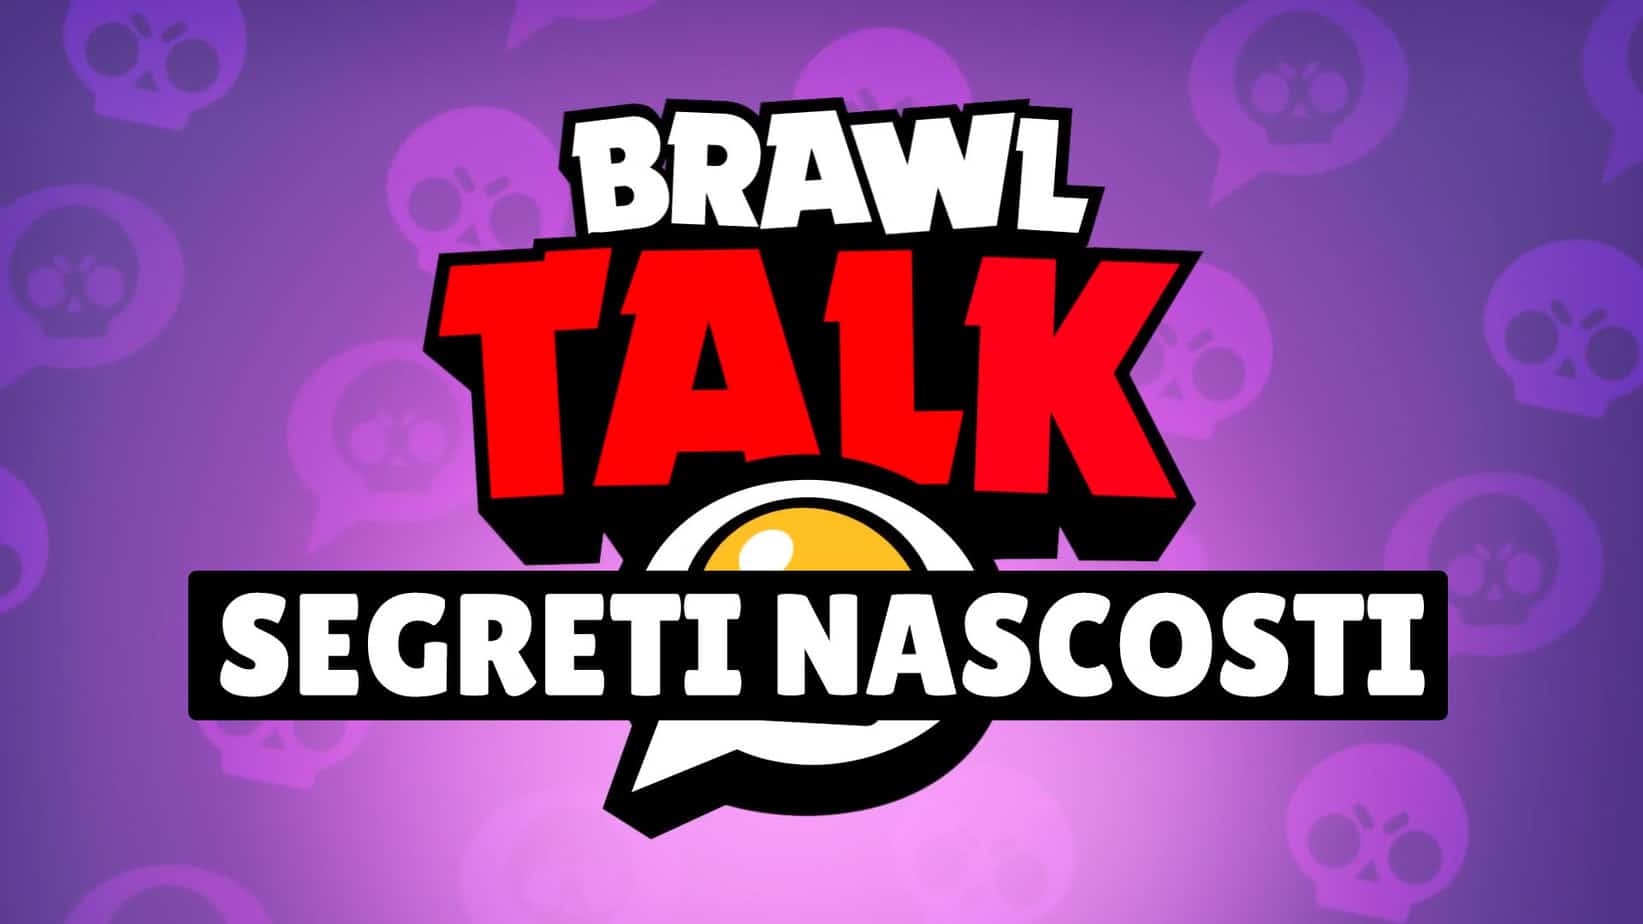 Brawl Stars: i 4 Gadget nascosti nel Brawl Talk